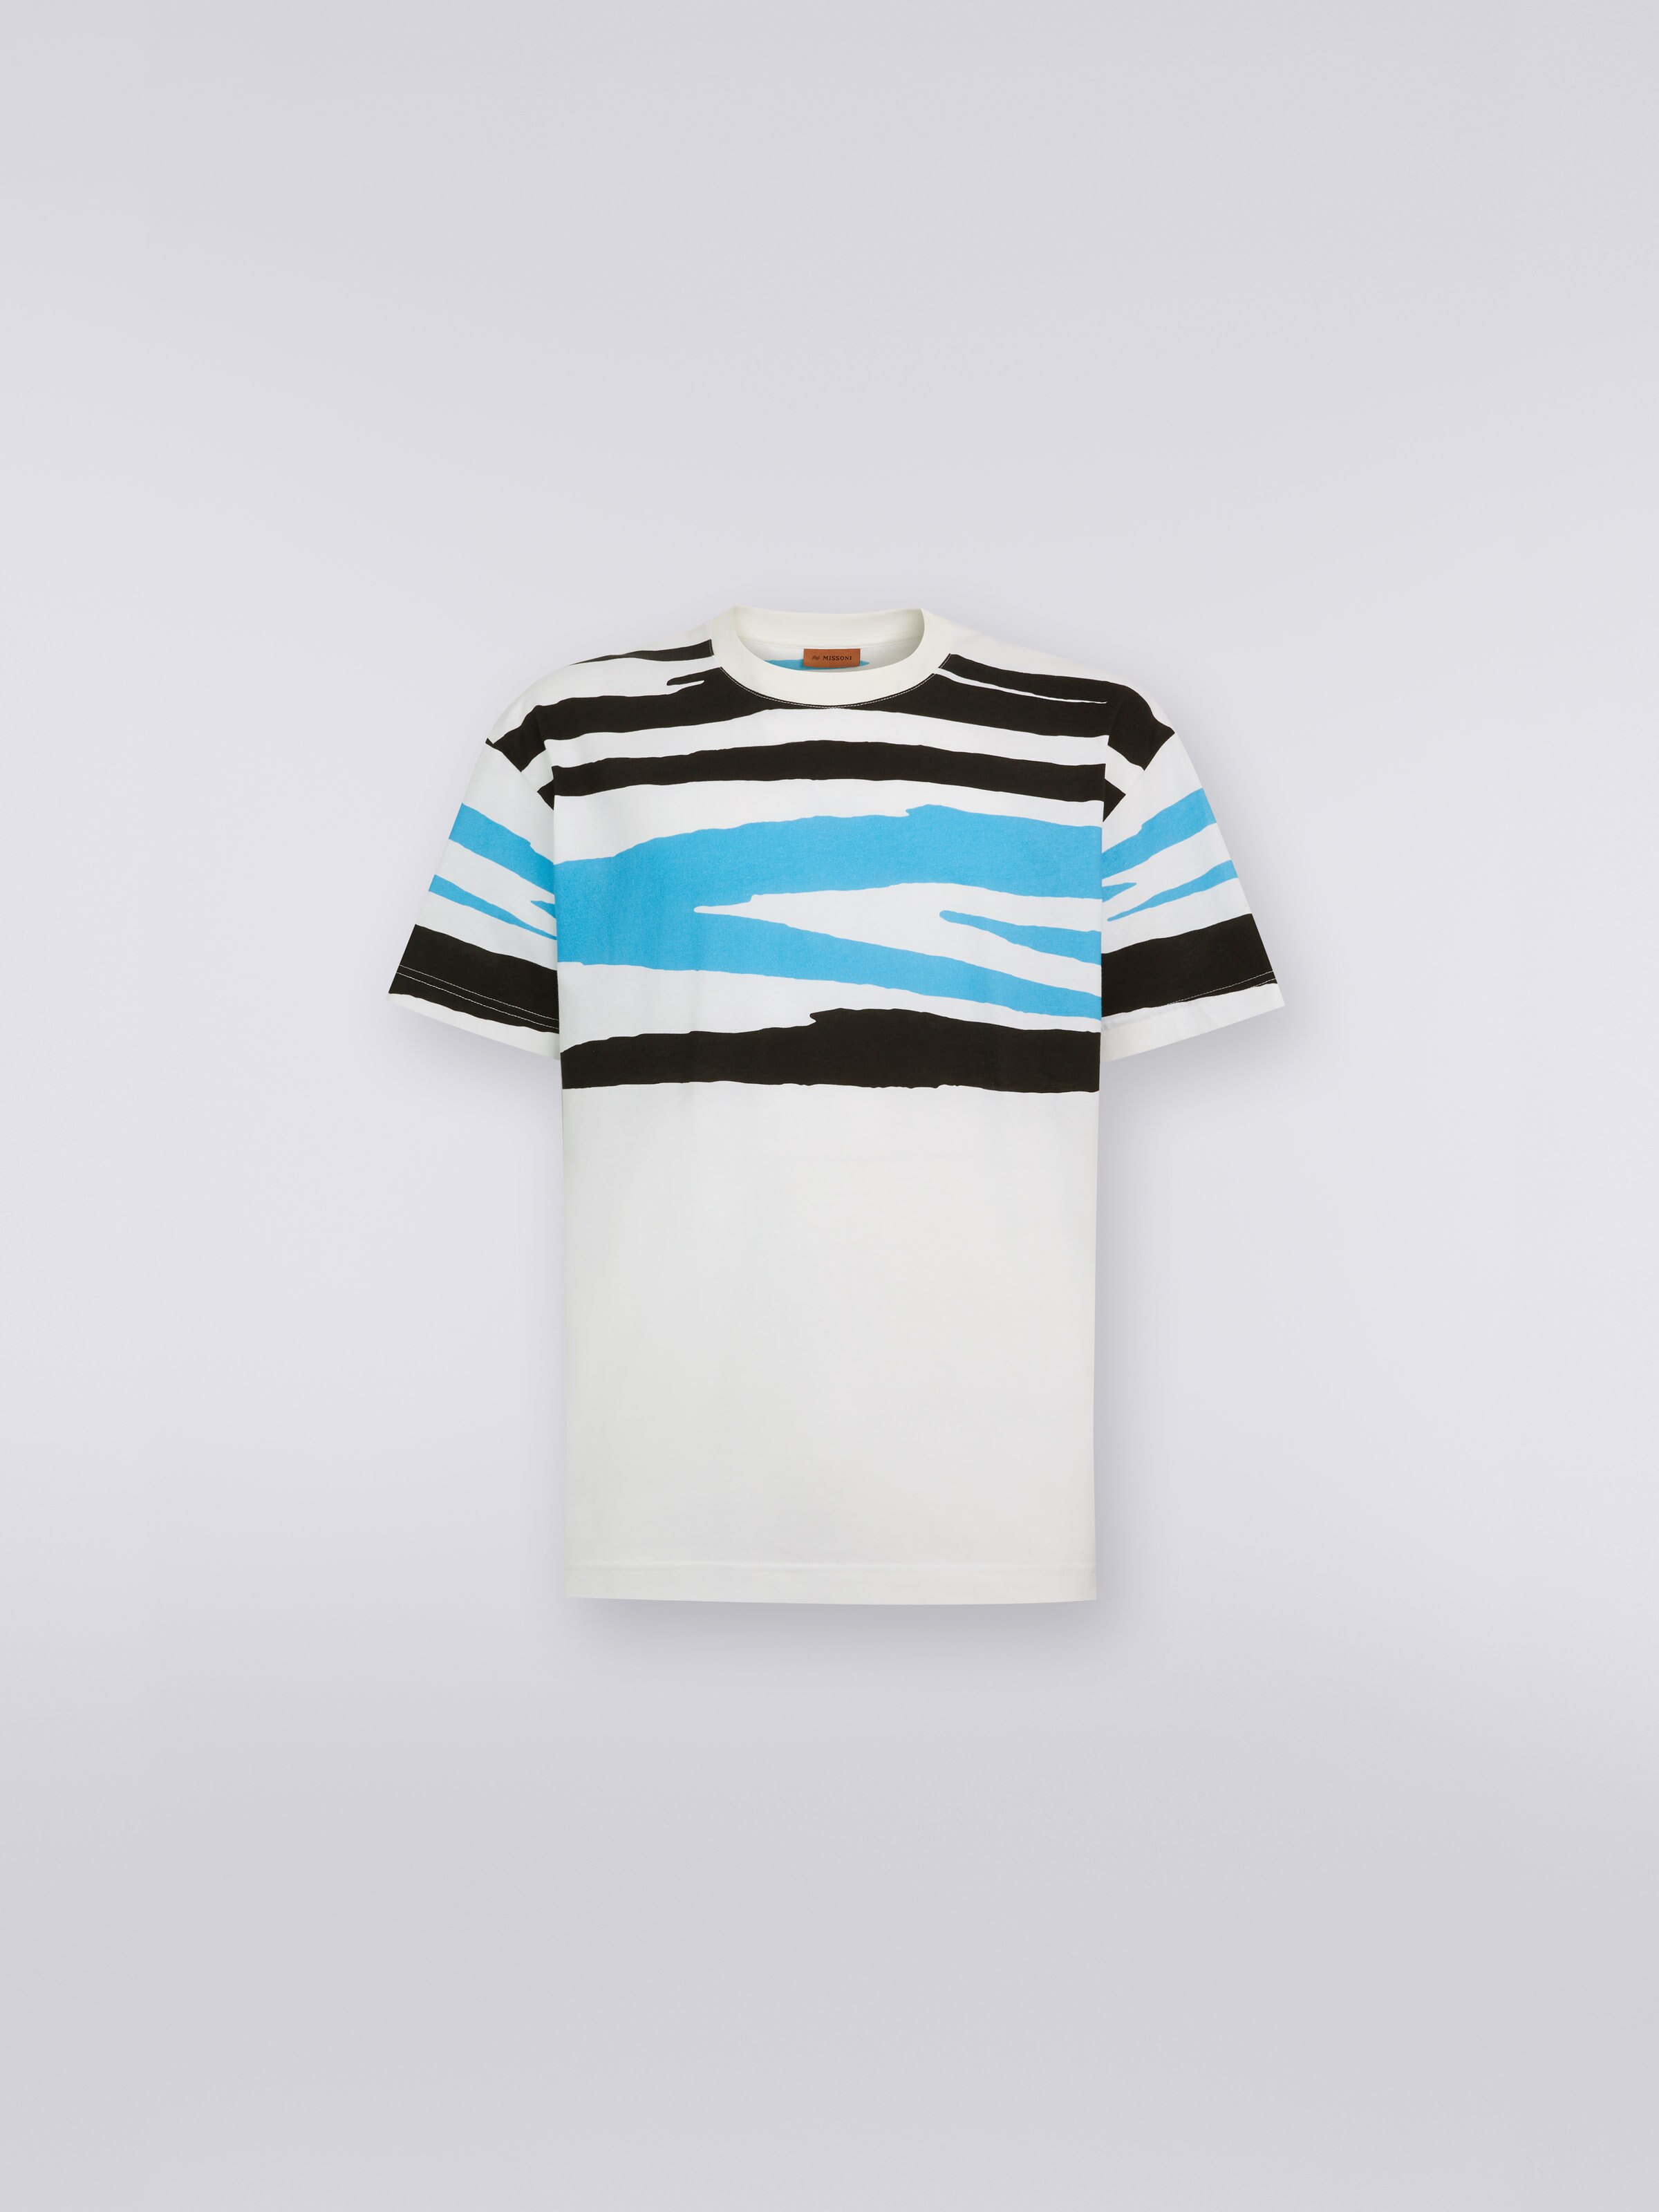 Rundhals-T-Shirt aus Baumwolljersey in Flammgarnoptik, Weiß, Schwarz & Blau   - 0